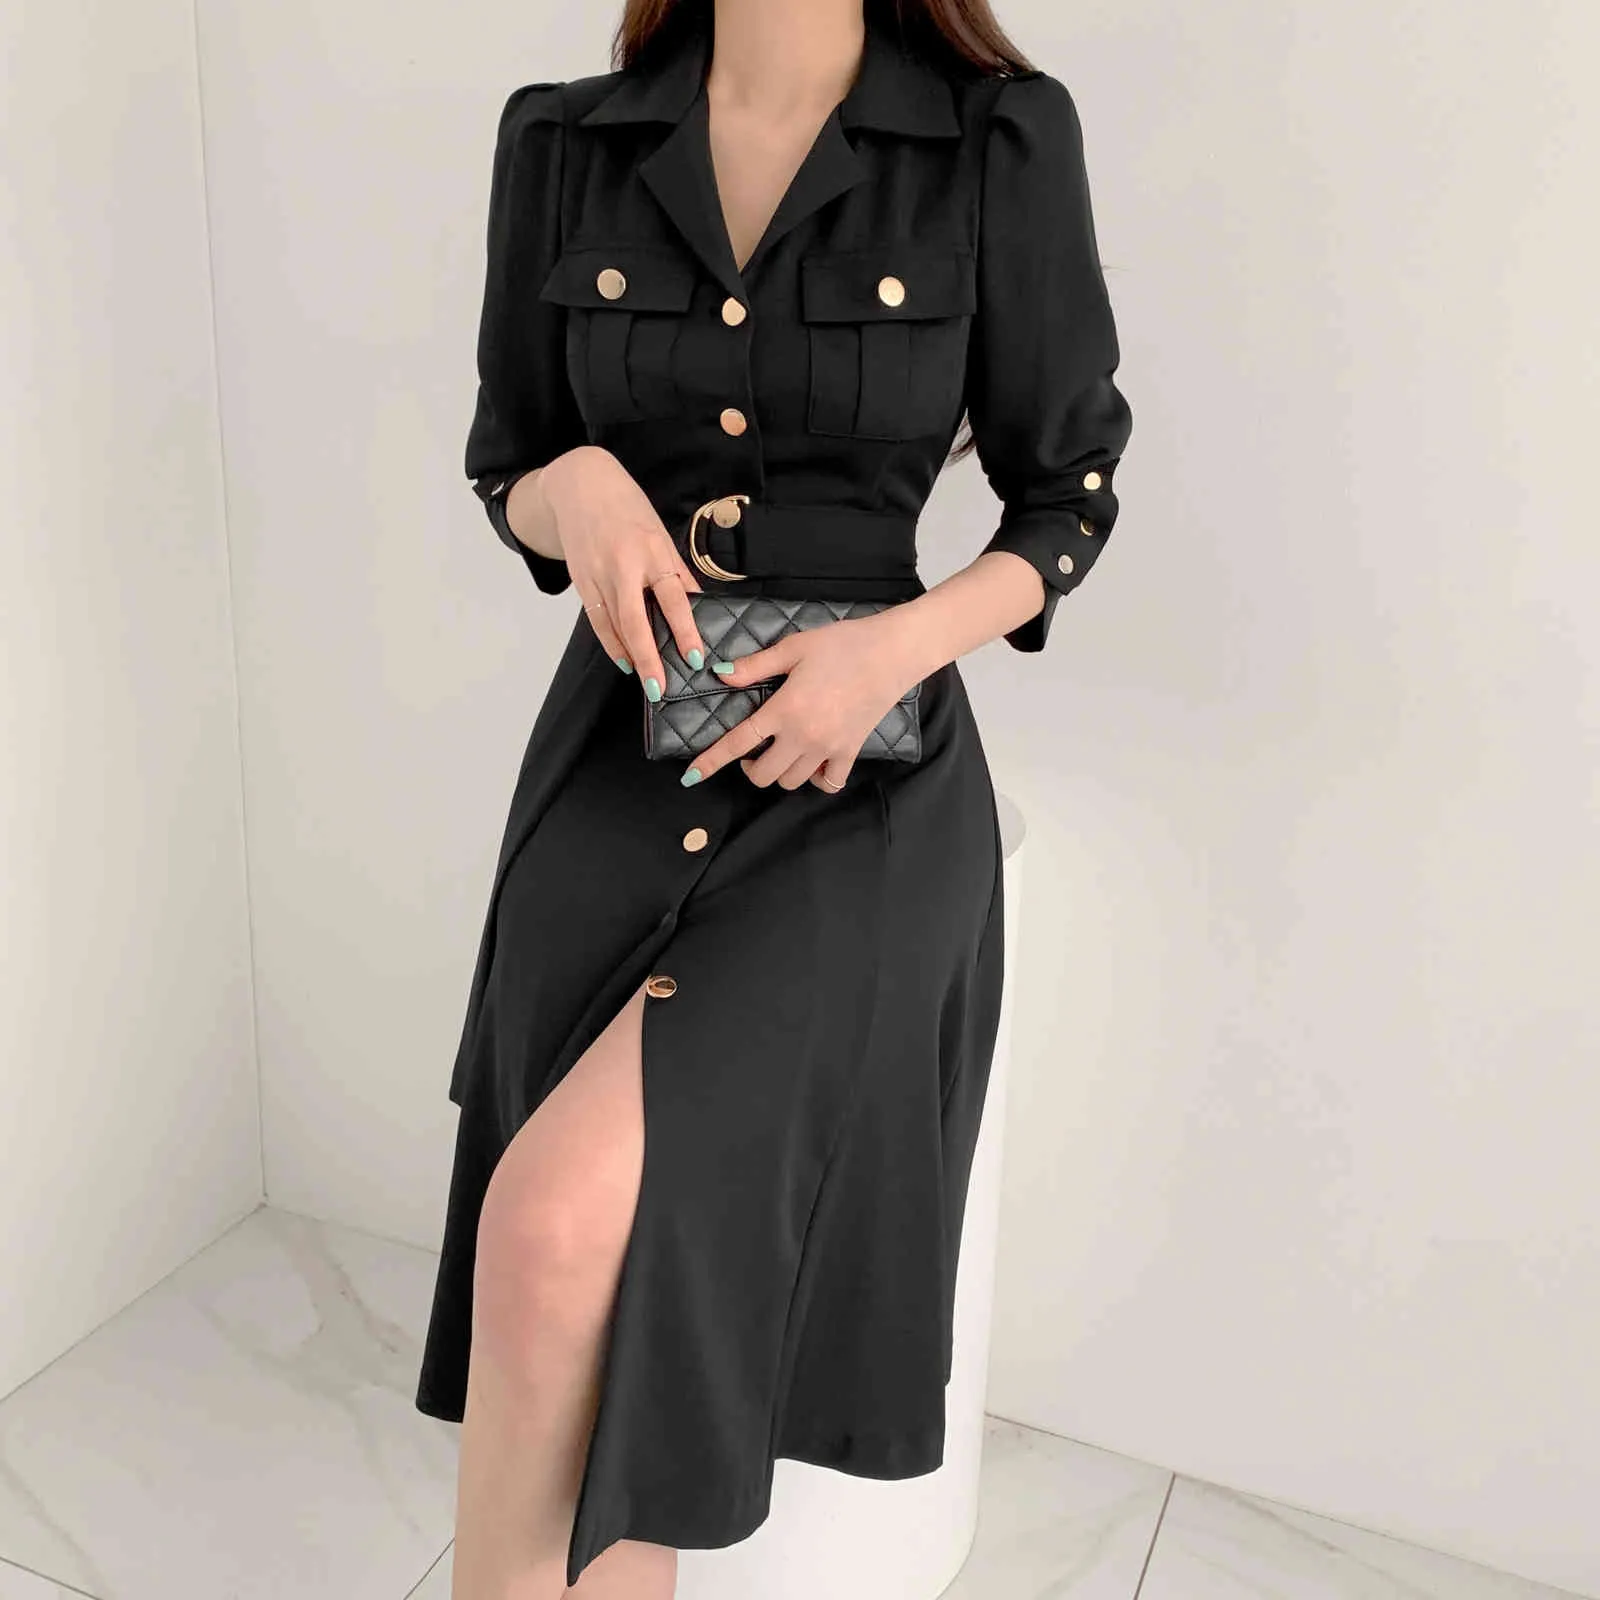 Elegancka jednopierierska klapa Kobiety MIDI Dress Moda Z Długim Rękawem Rozwiązywany Slim Talii Kobieta Sukienka Workwear Vestidos 210518